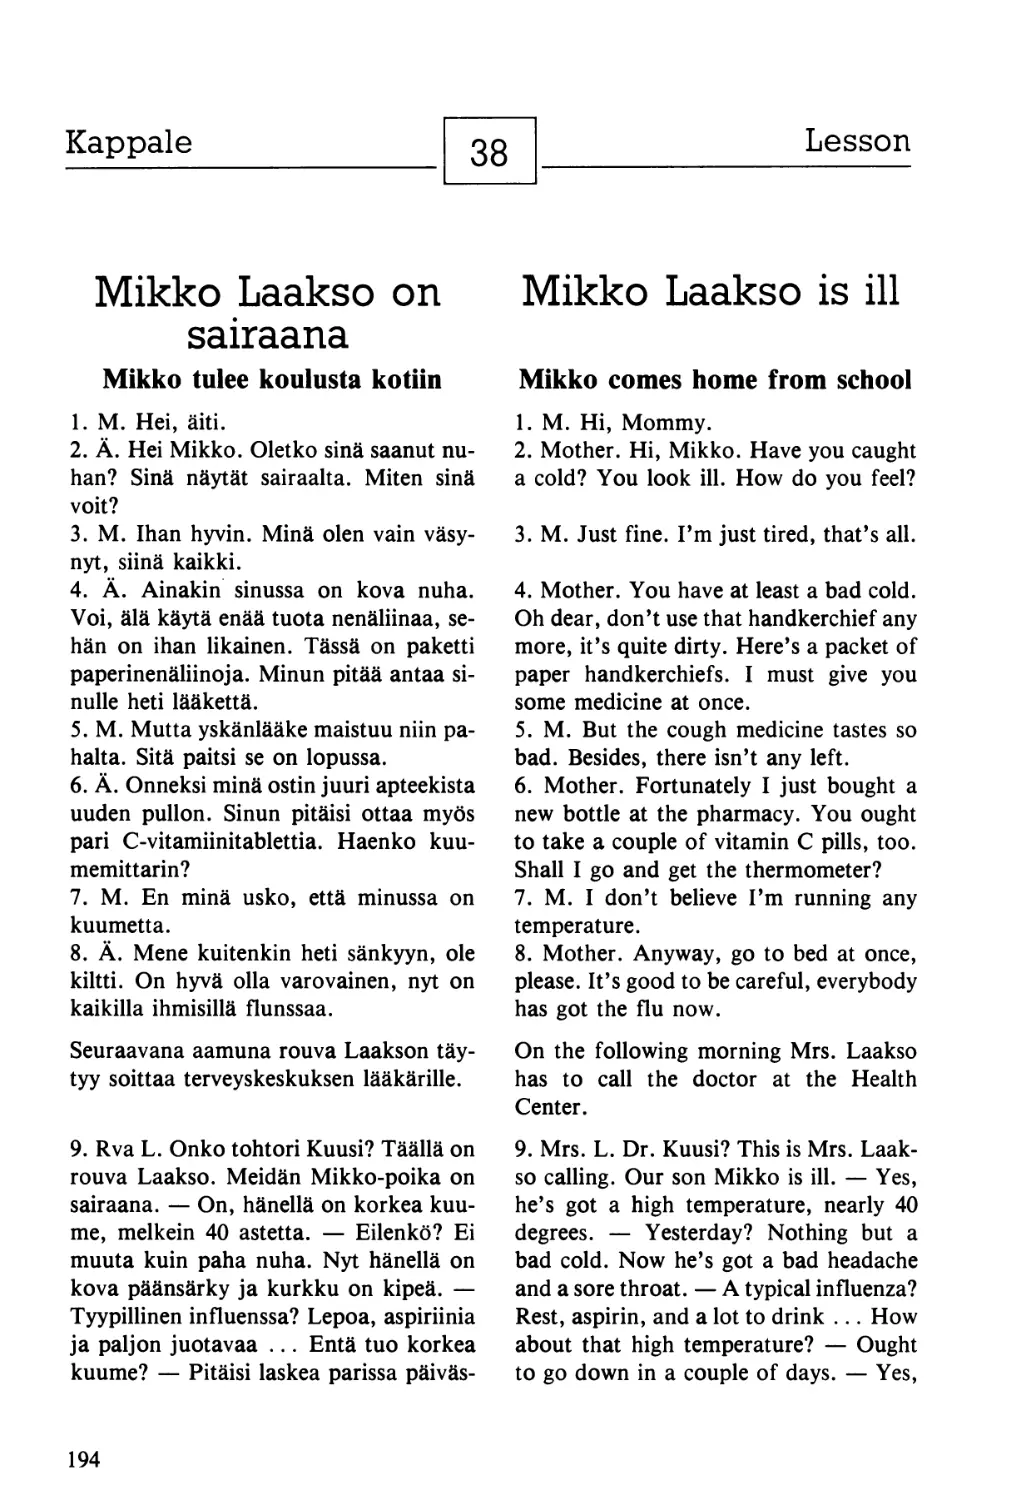 38. Mikko Laakso on sairaana — Mikko Laakso is ill